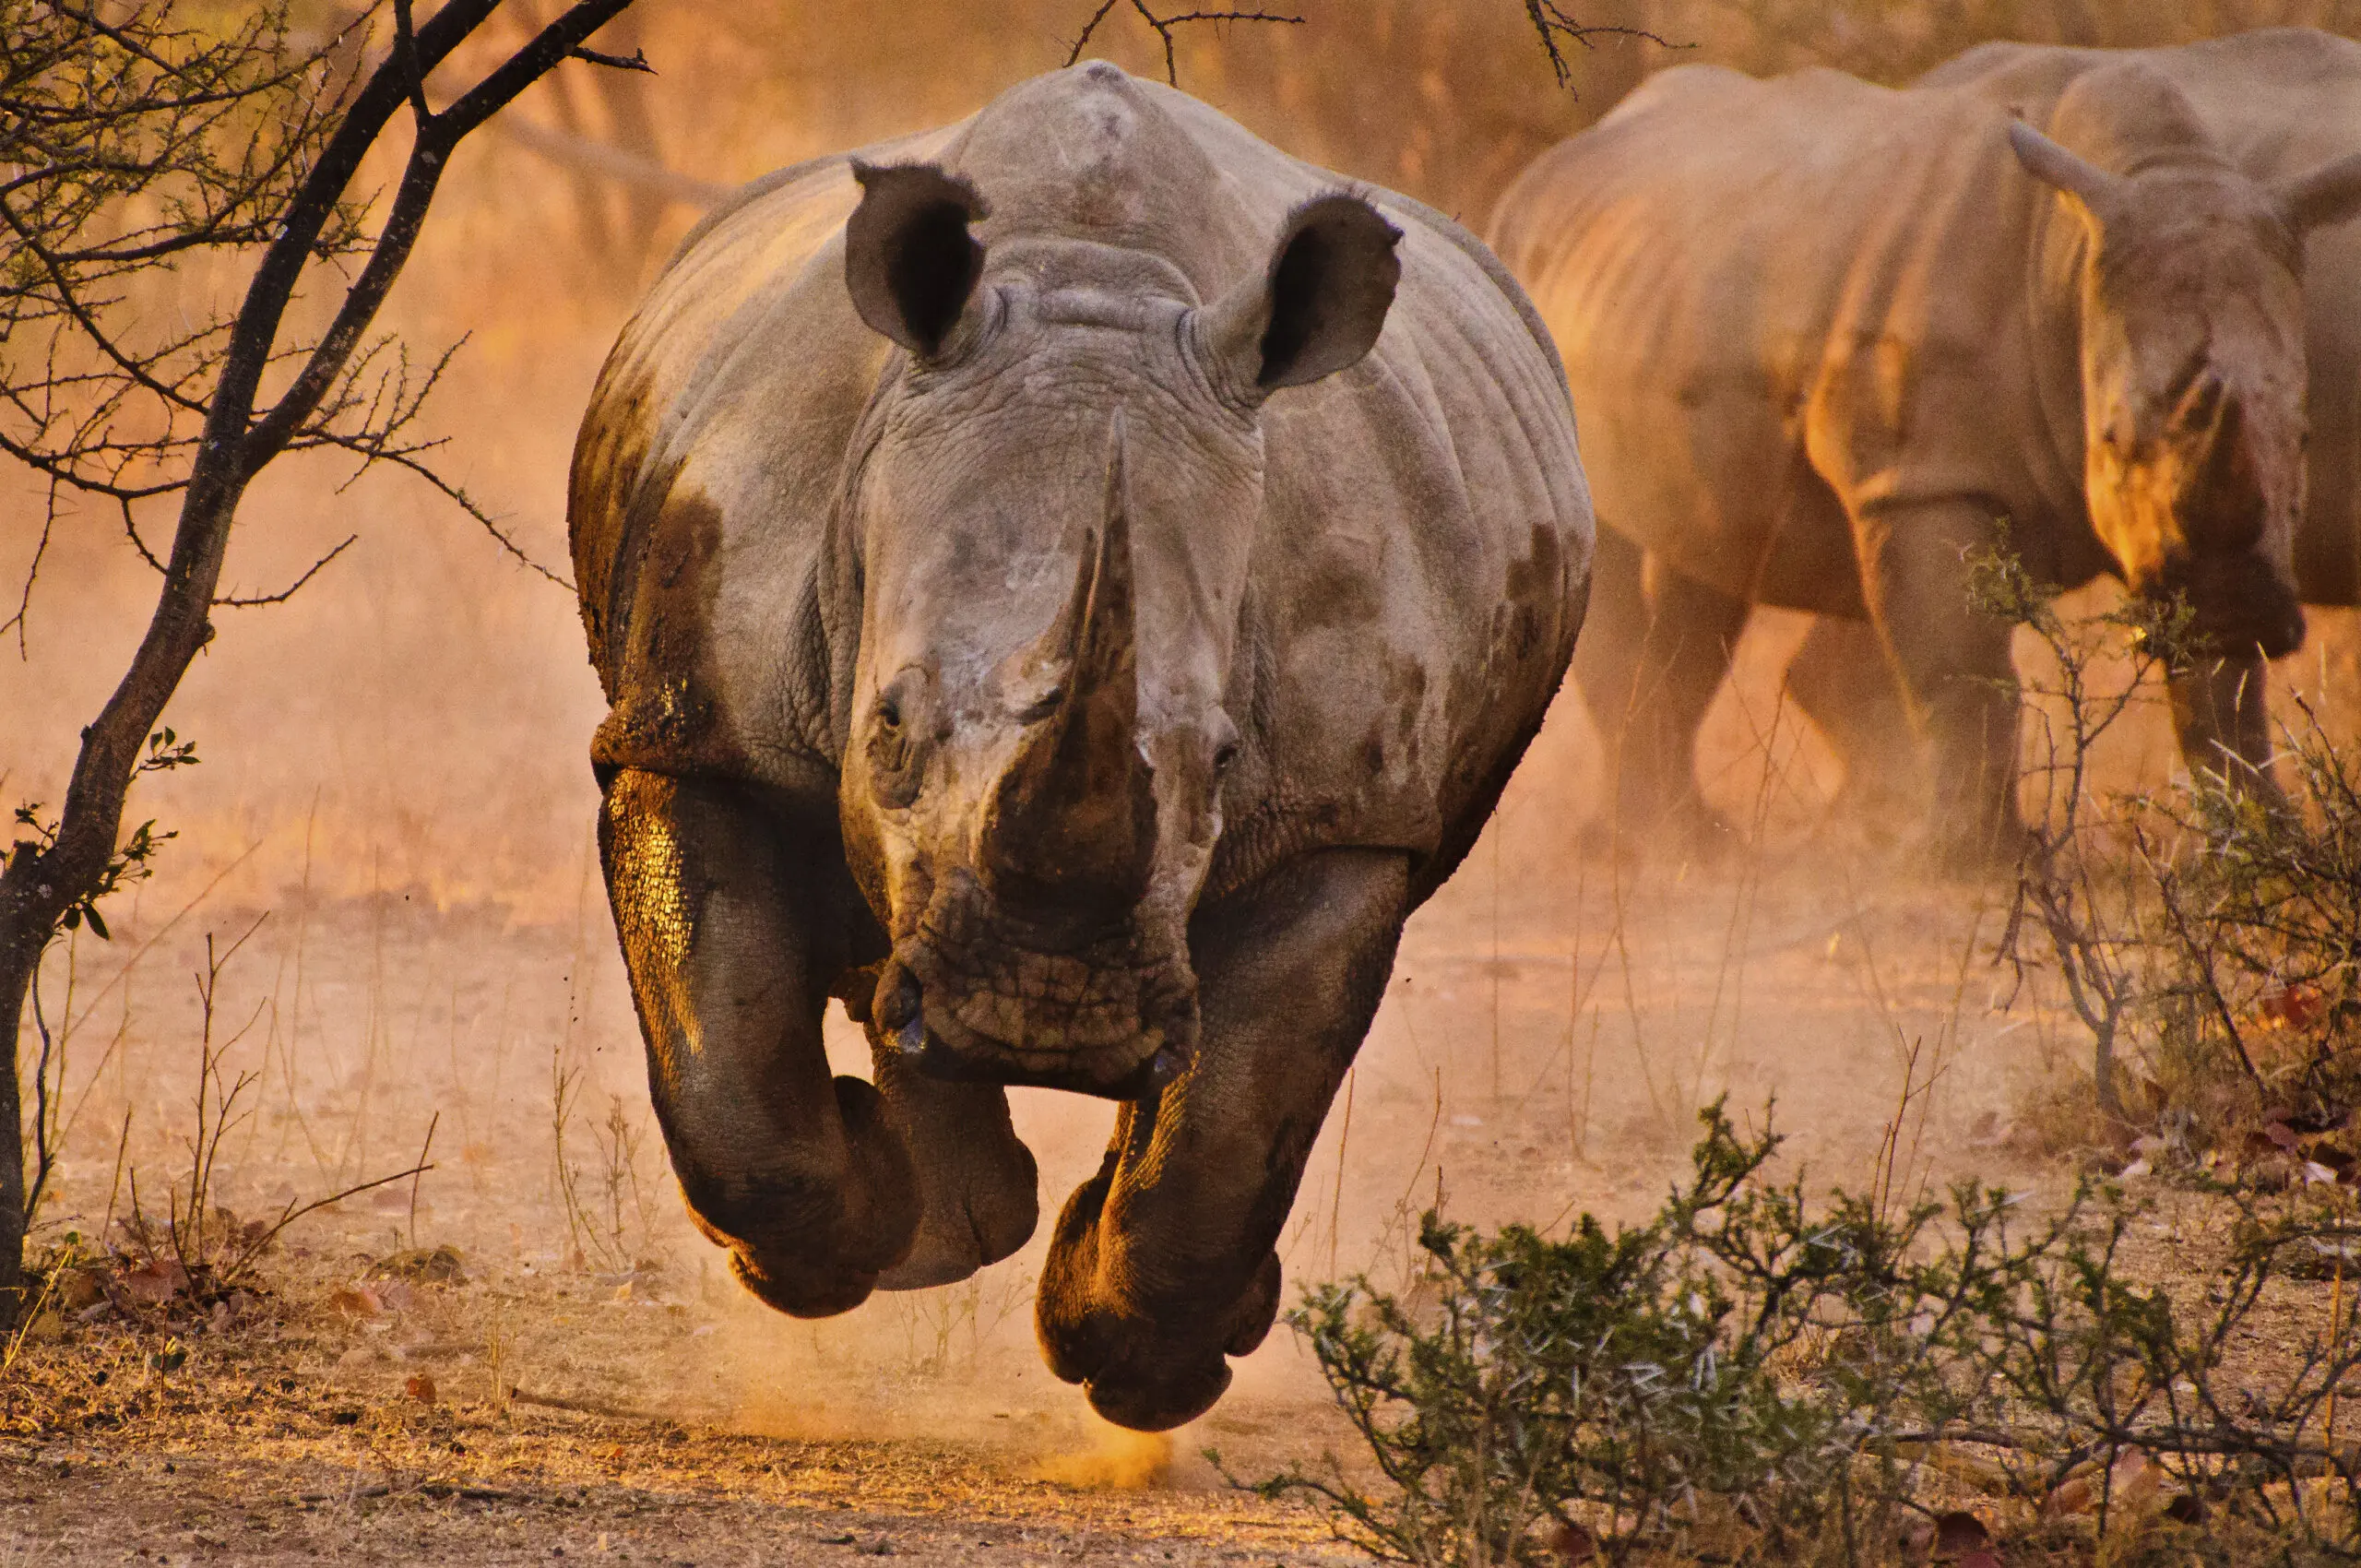 Wandbild (3371) Rhino learning to fly präsentiert: Tiere,Wildtiere,Aus Afrika